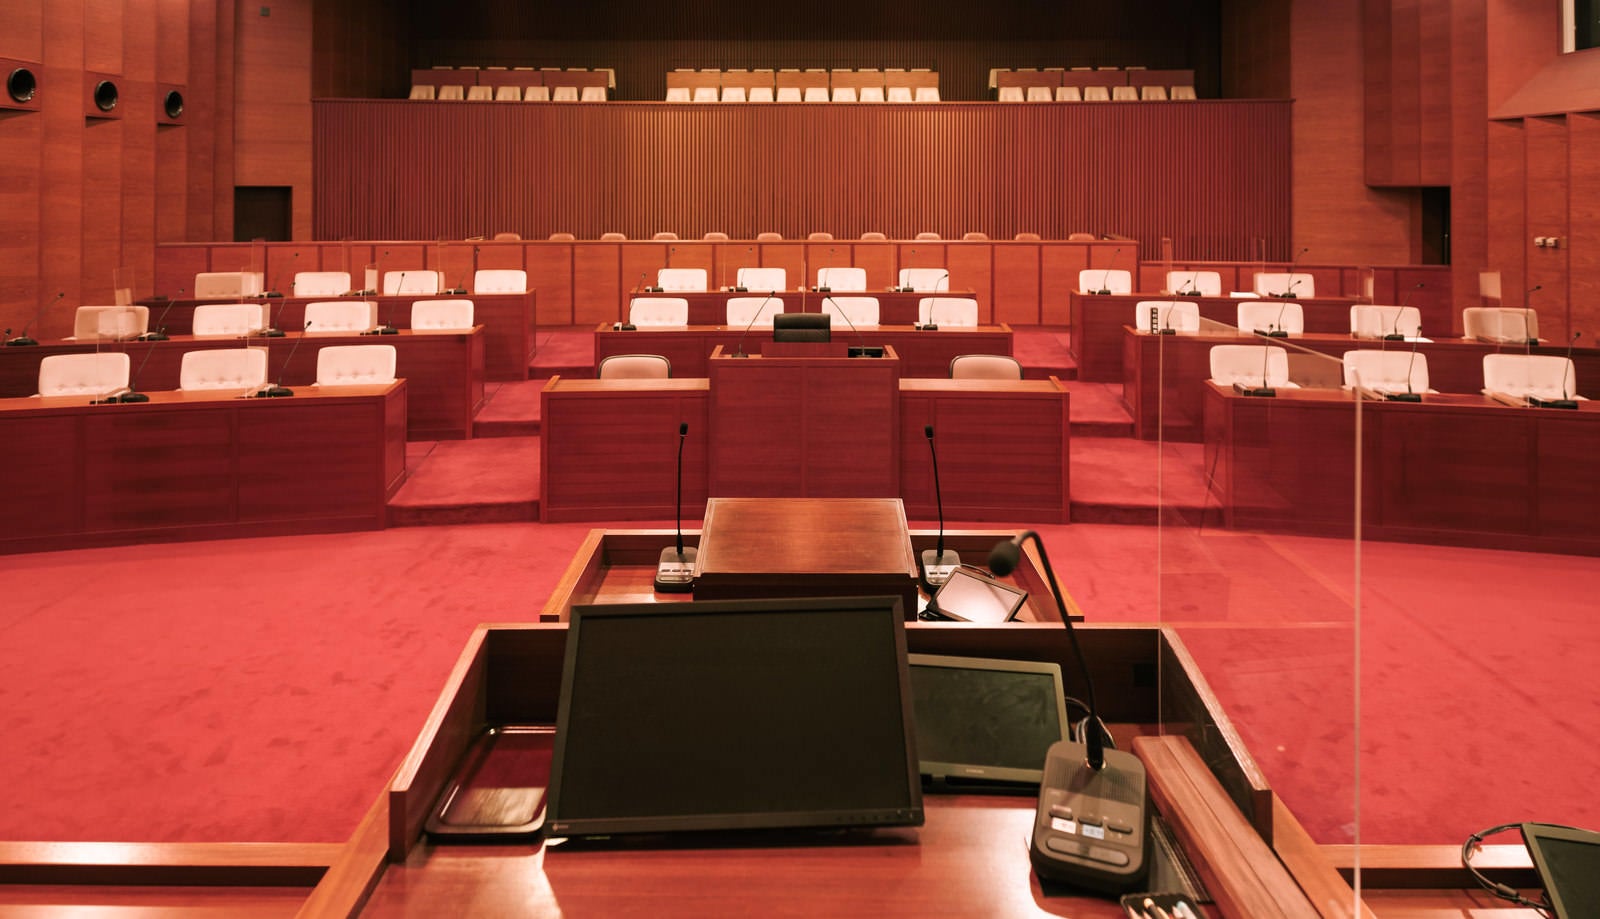 「議長席に座って眺めた津山市議会議場の様子 | フリー素材のぱくたそ」の写真